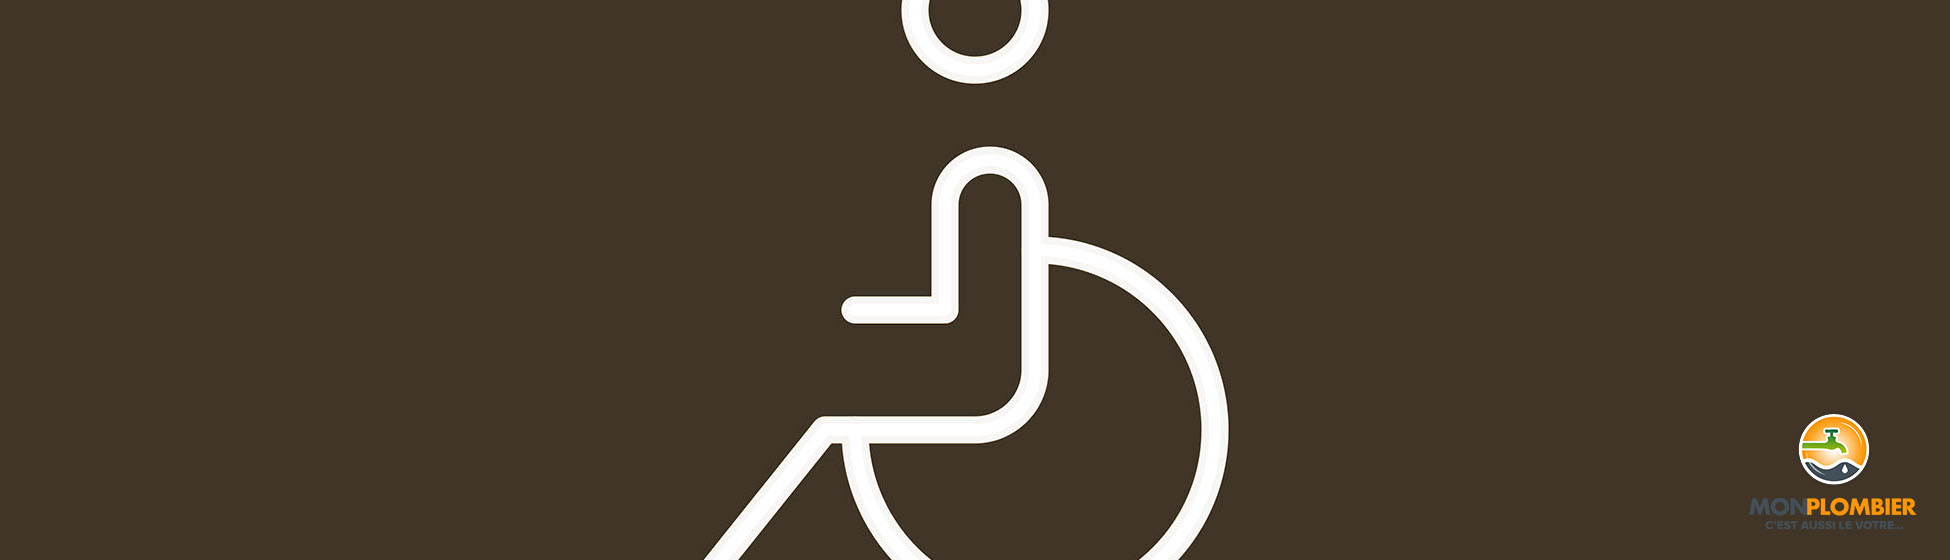 Pmr handicap